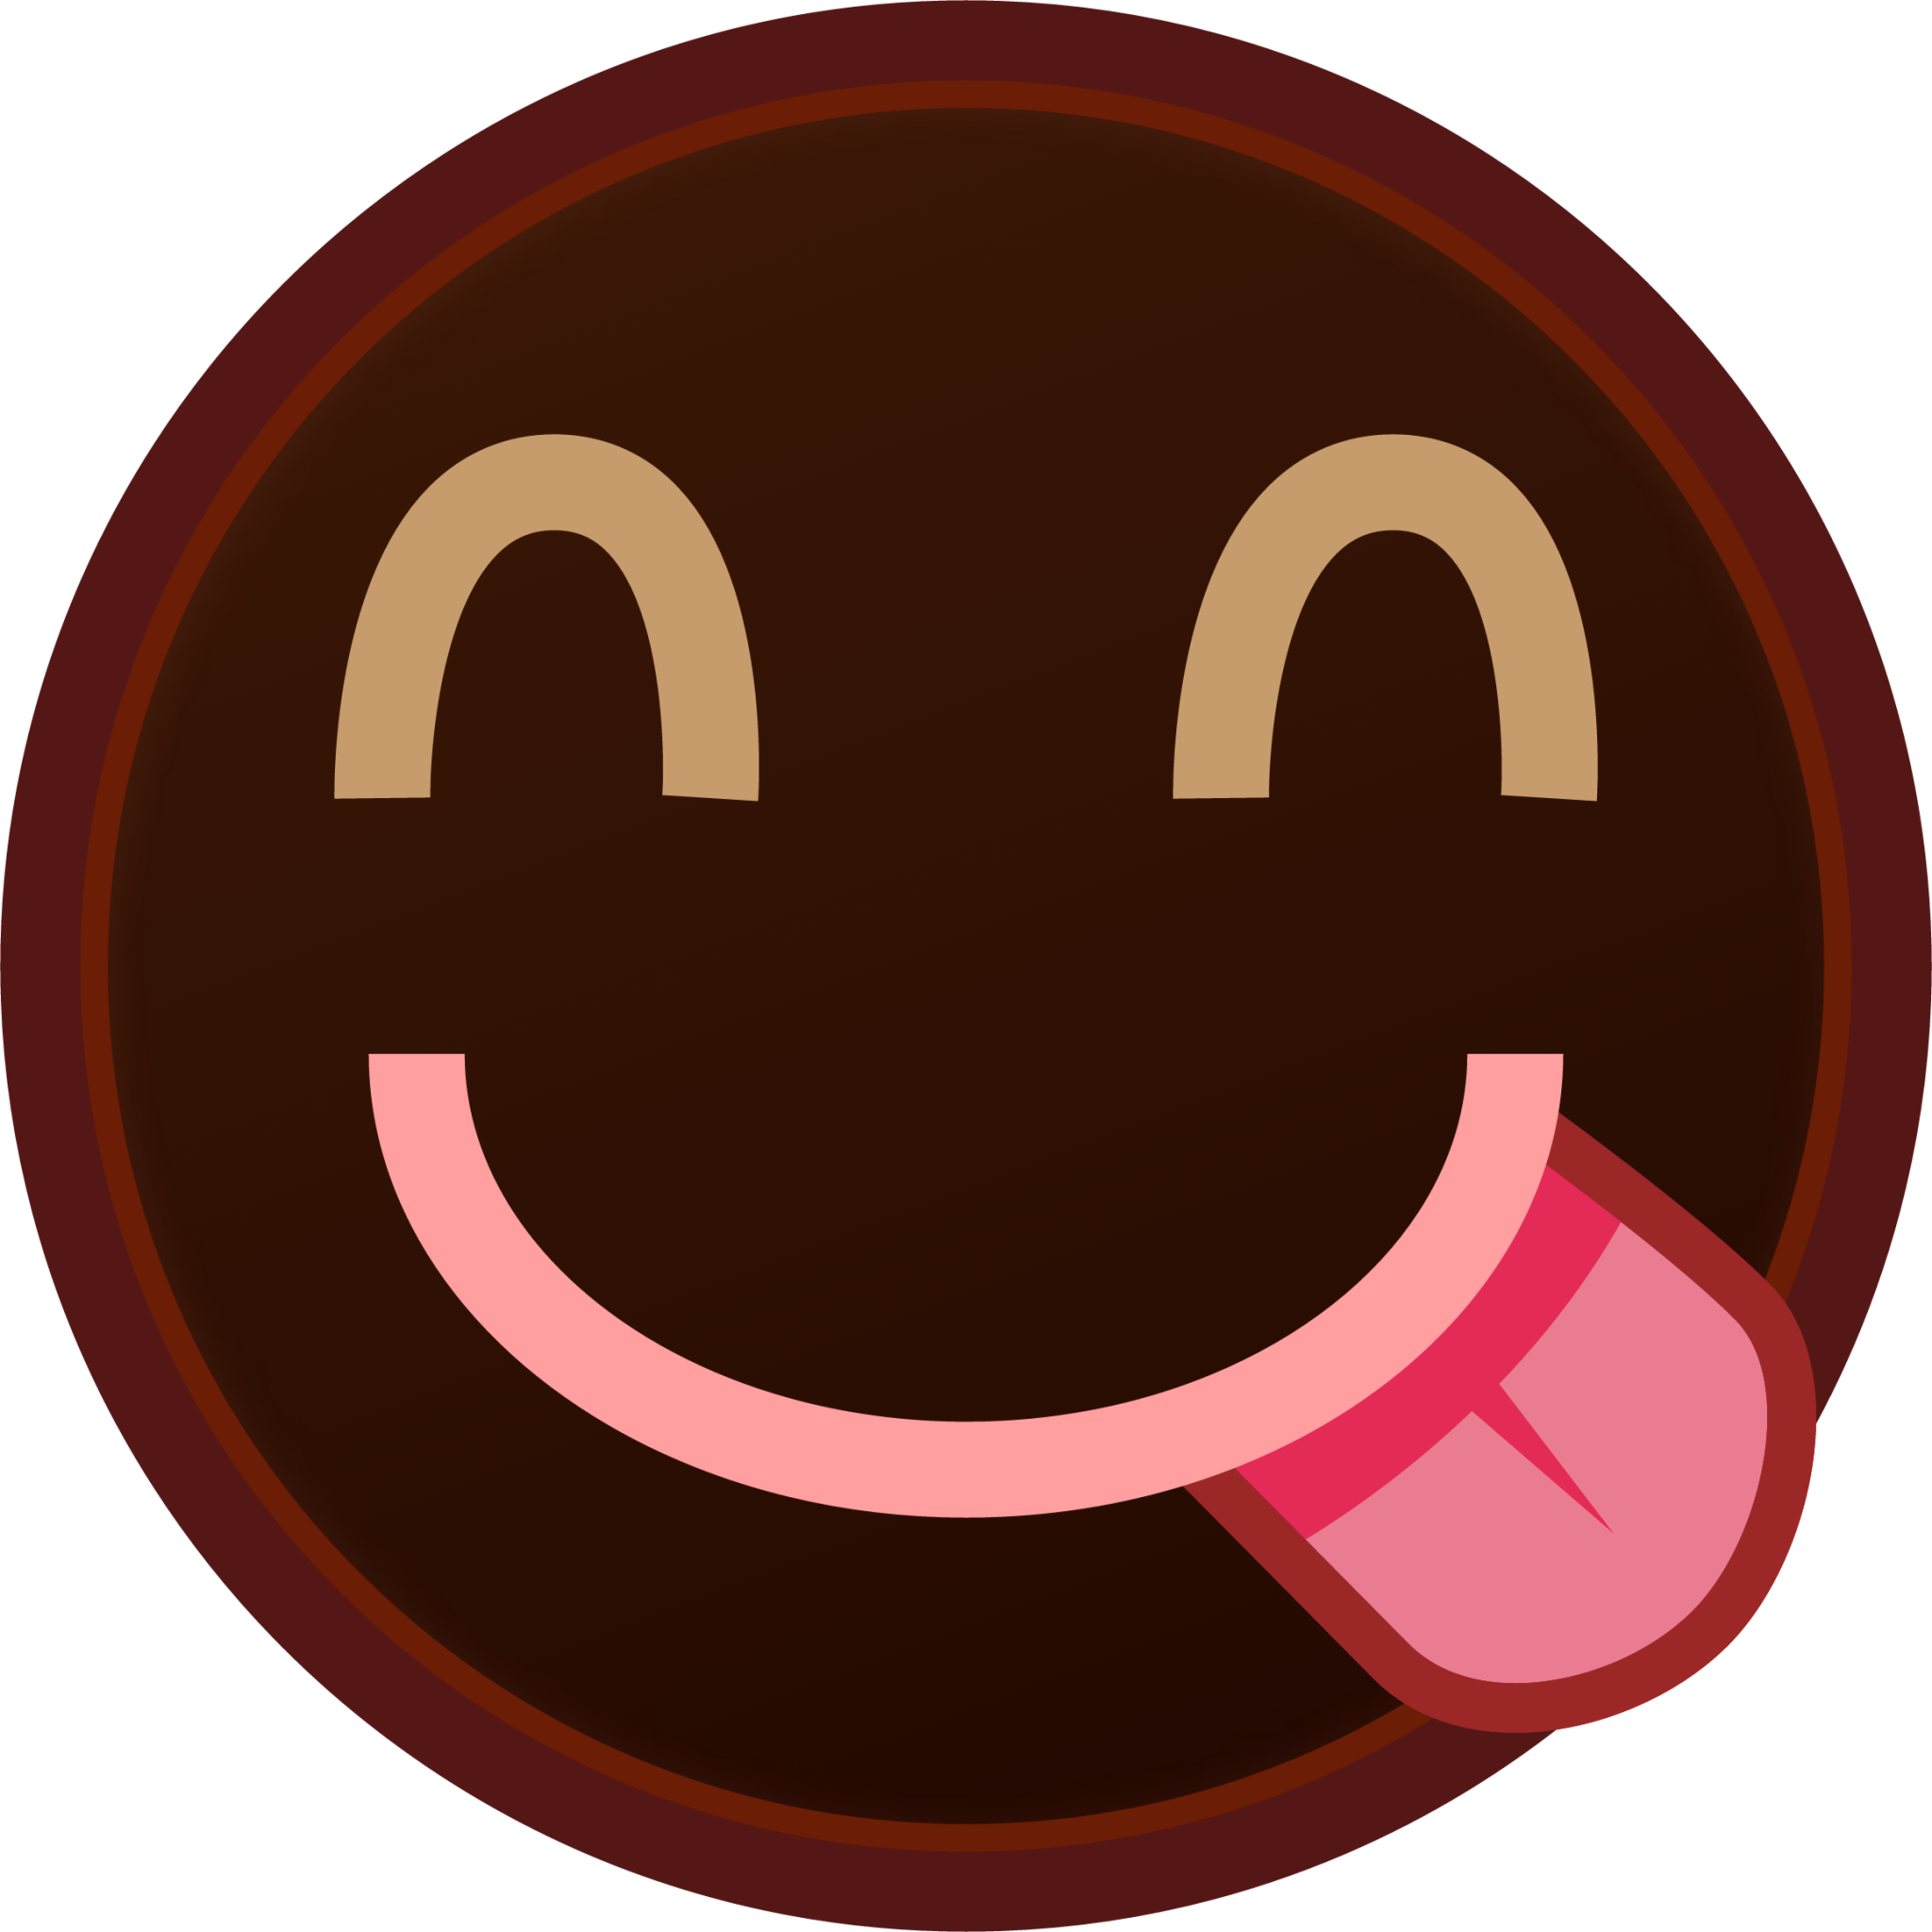 yum (black) Emoji - Download for free – Iconduck